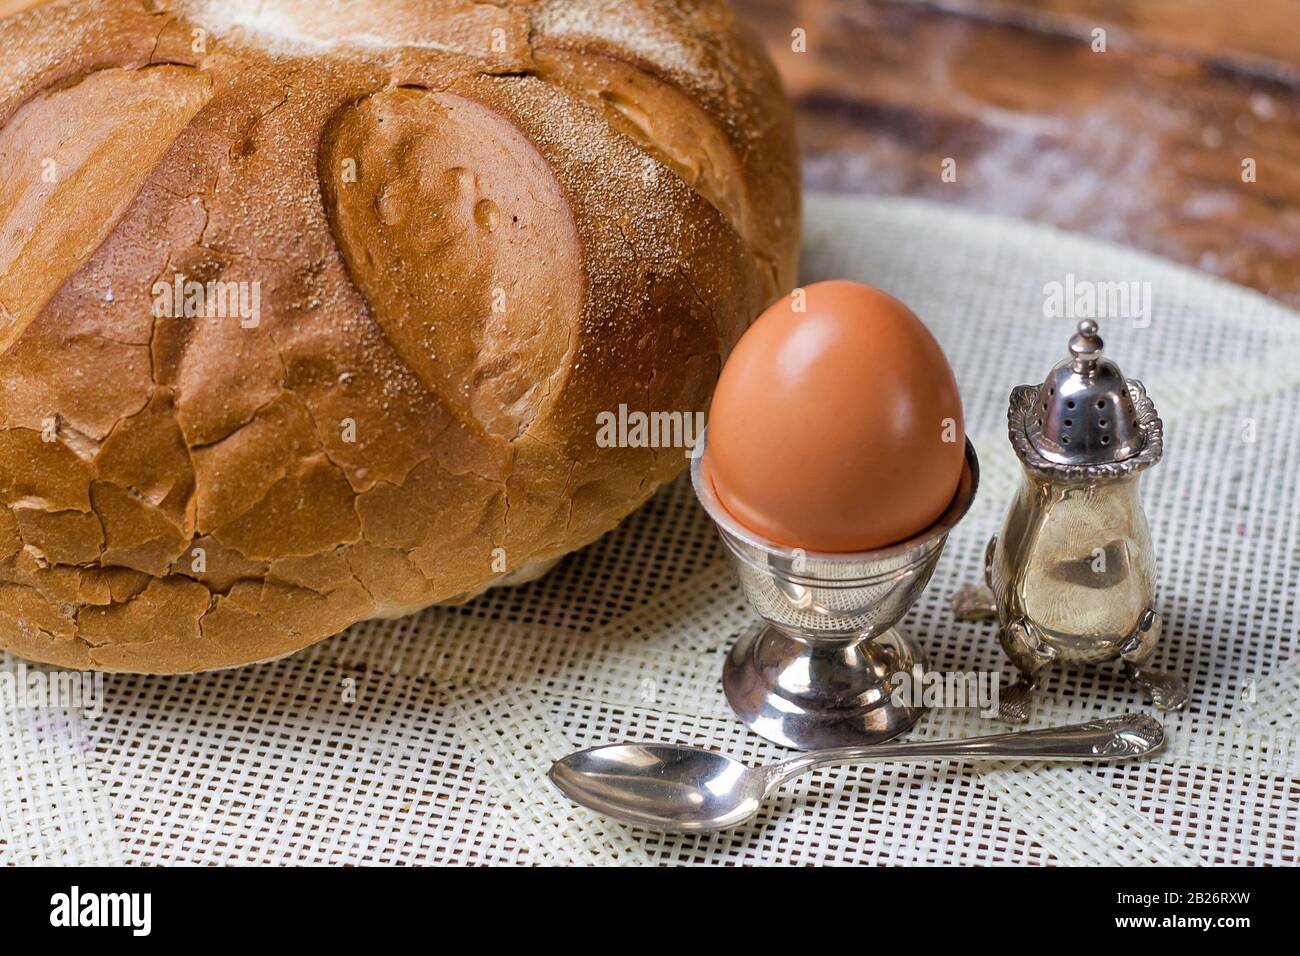 Pane sul tavolo in legno con farina, uovo in argento, agitatrice di sale e cucchiaio Foto Stock